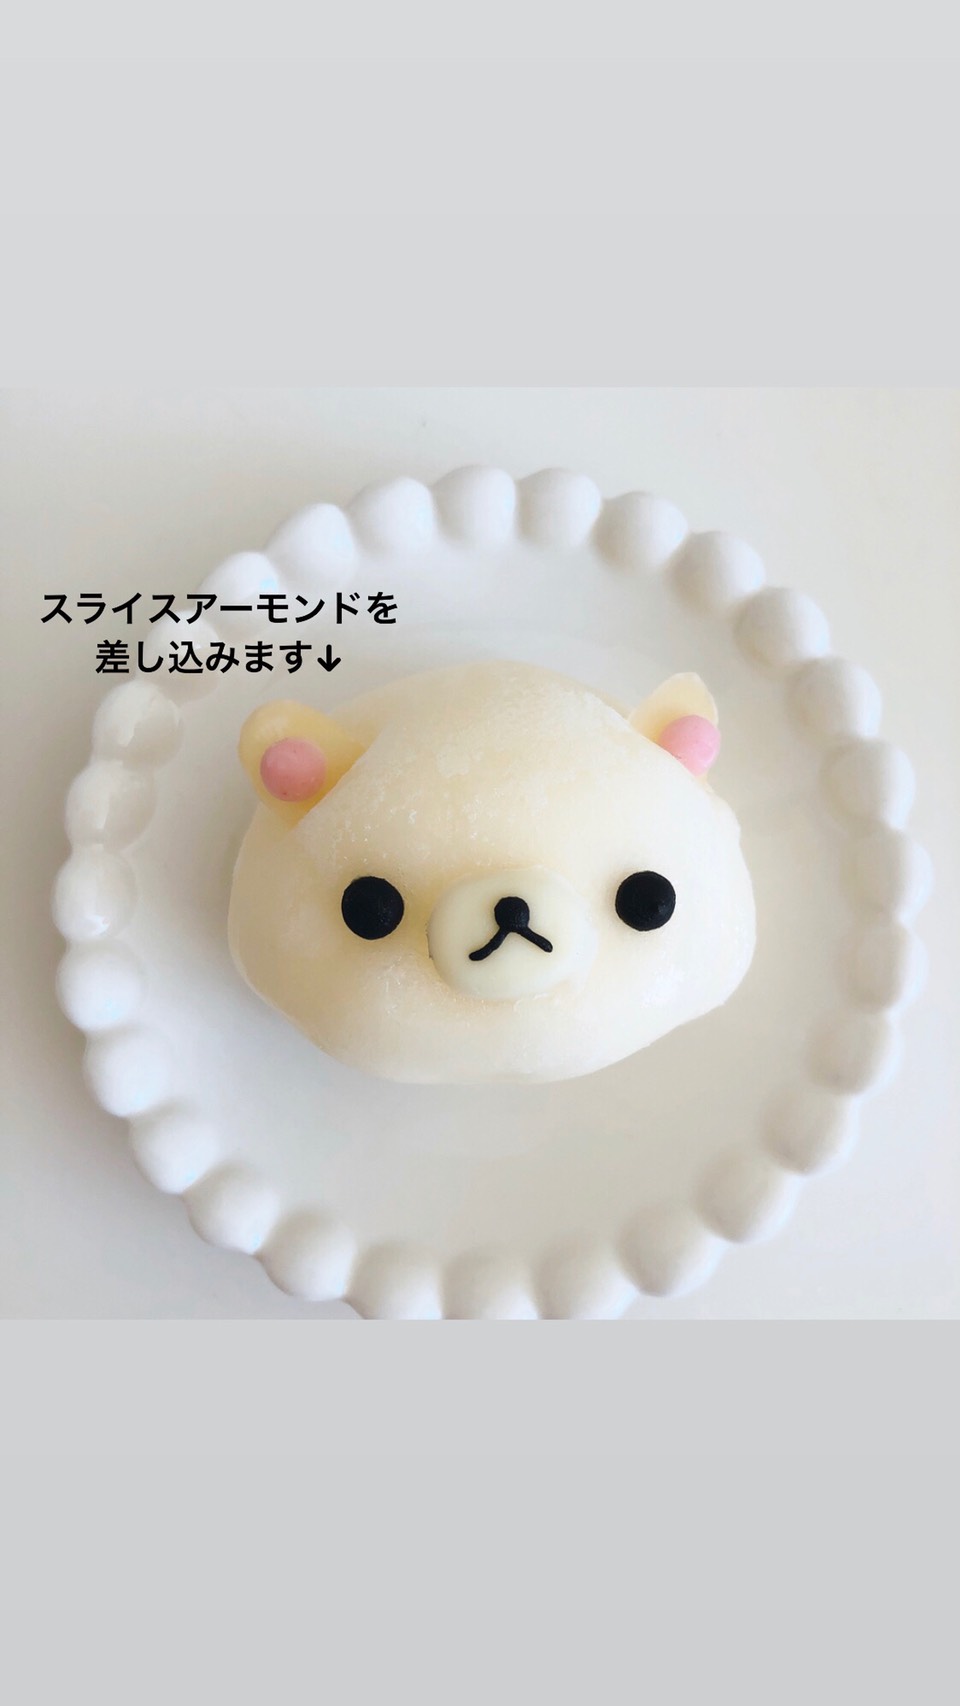 コリラックマスイーツレシピ 懶懶熊 食譜 Korilakkuma Dessert Recipe3